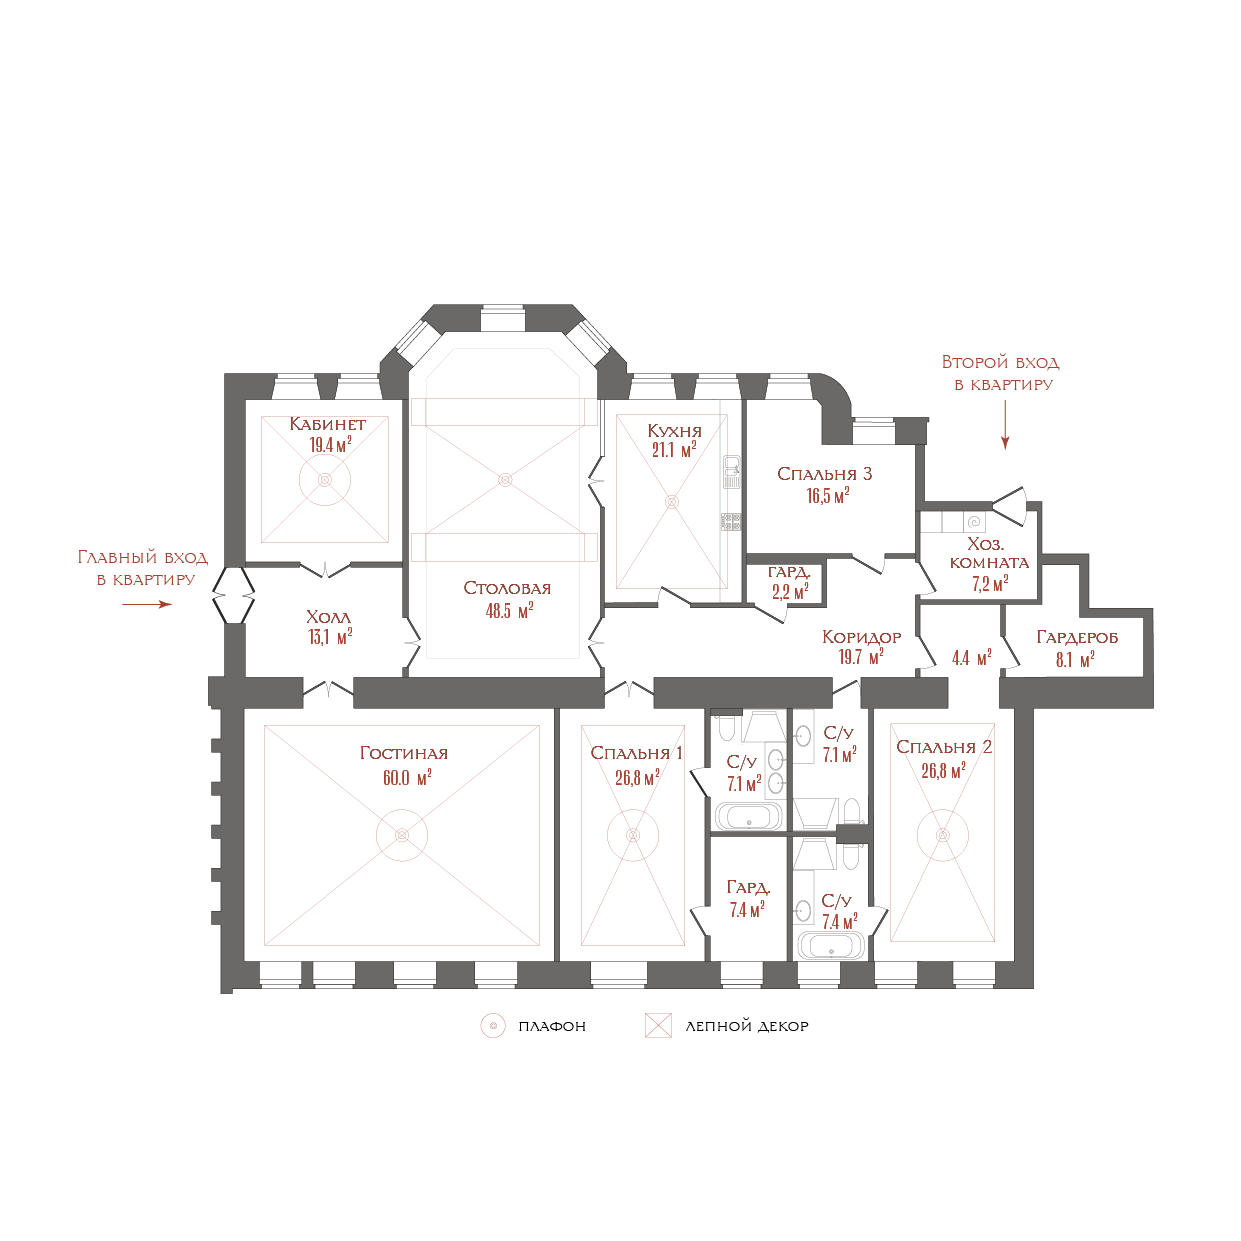 2-комнатная квартира  №1 в Три грации: 304.07 м², этаж 1 - купить в Санкт-Петербурге